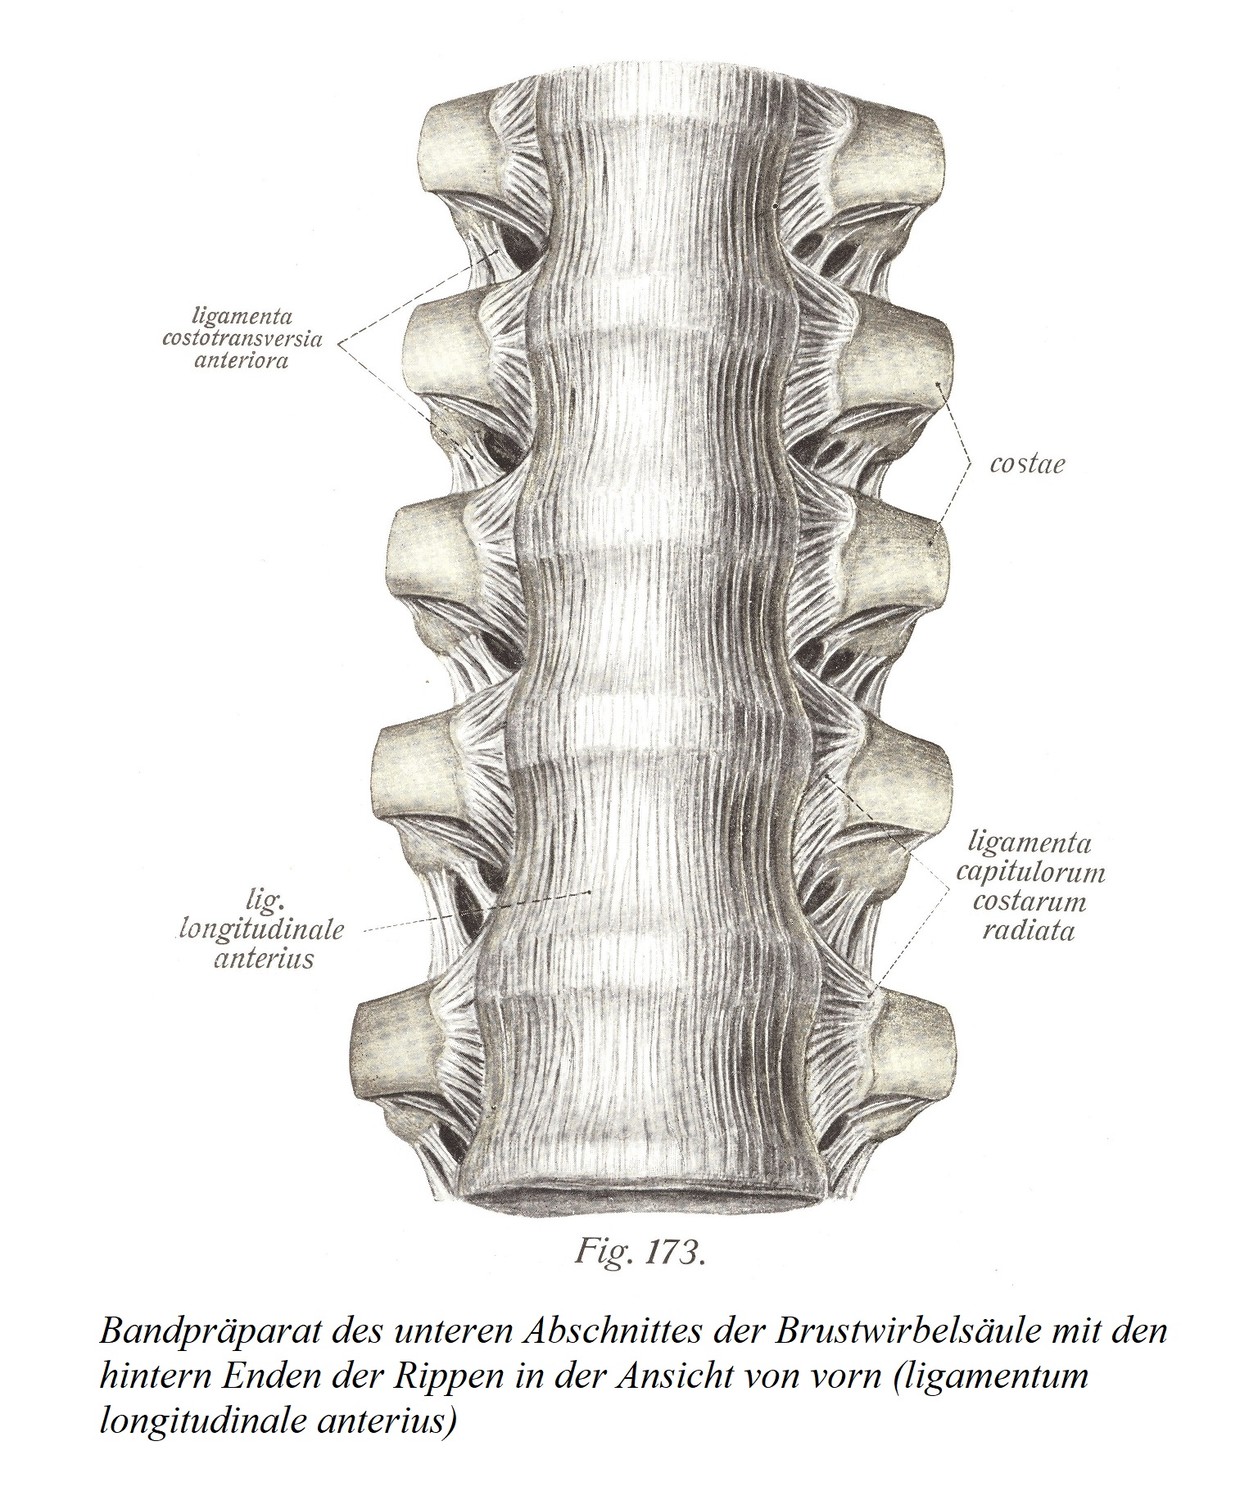 Связочный препарат нижнего отдела грудного отдела позвоночника с задними концами ребер при виде спереди (ligamentum продольная передняя)